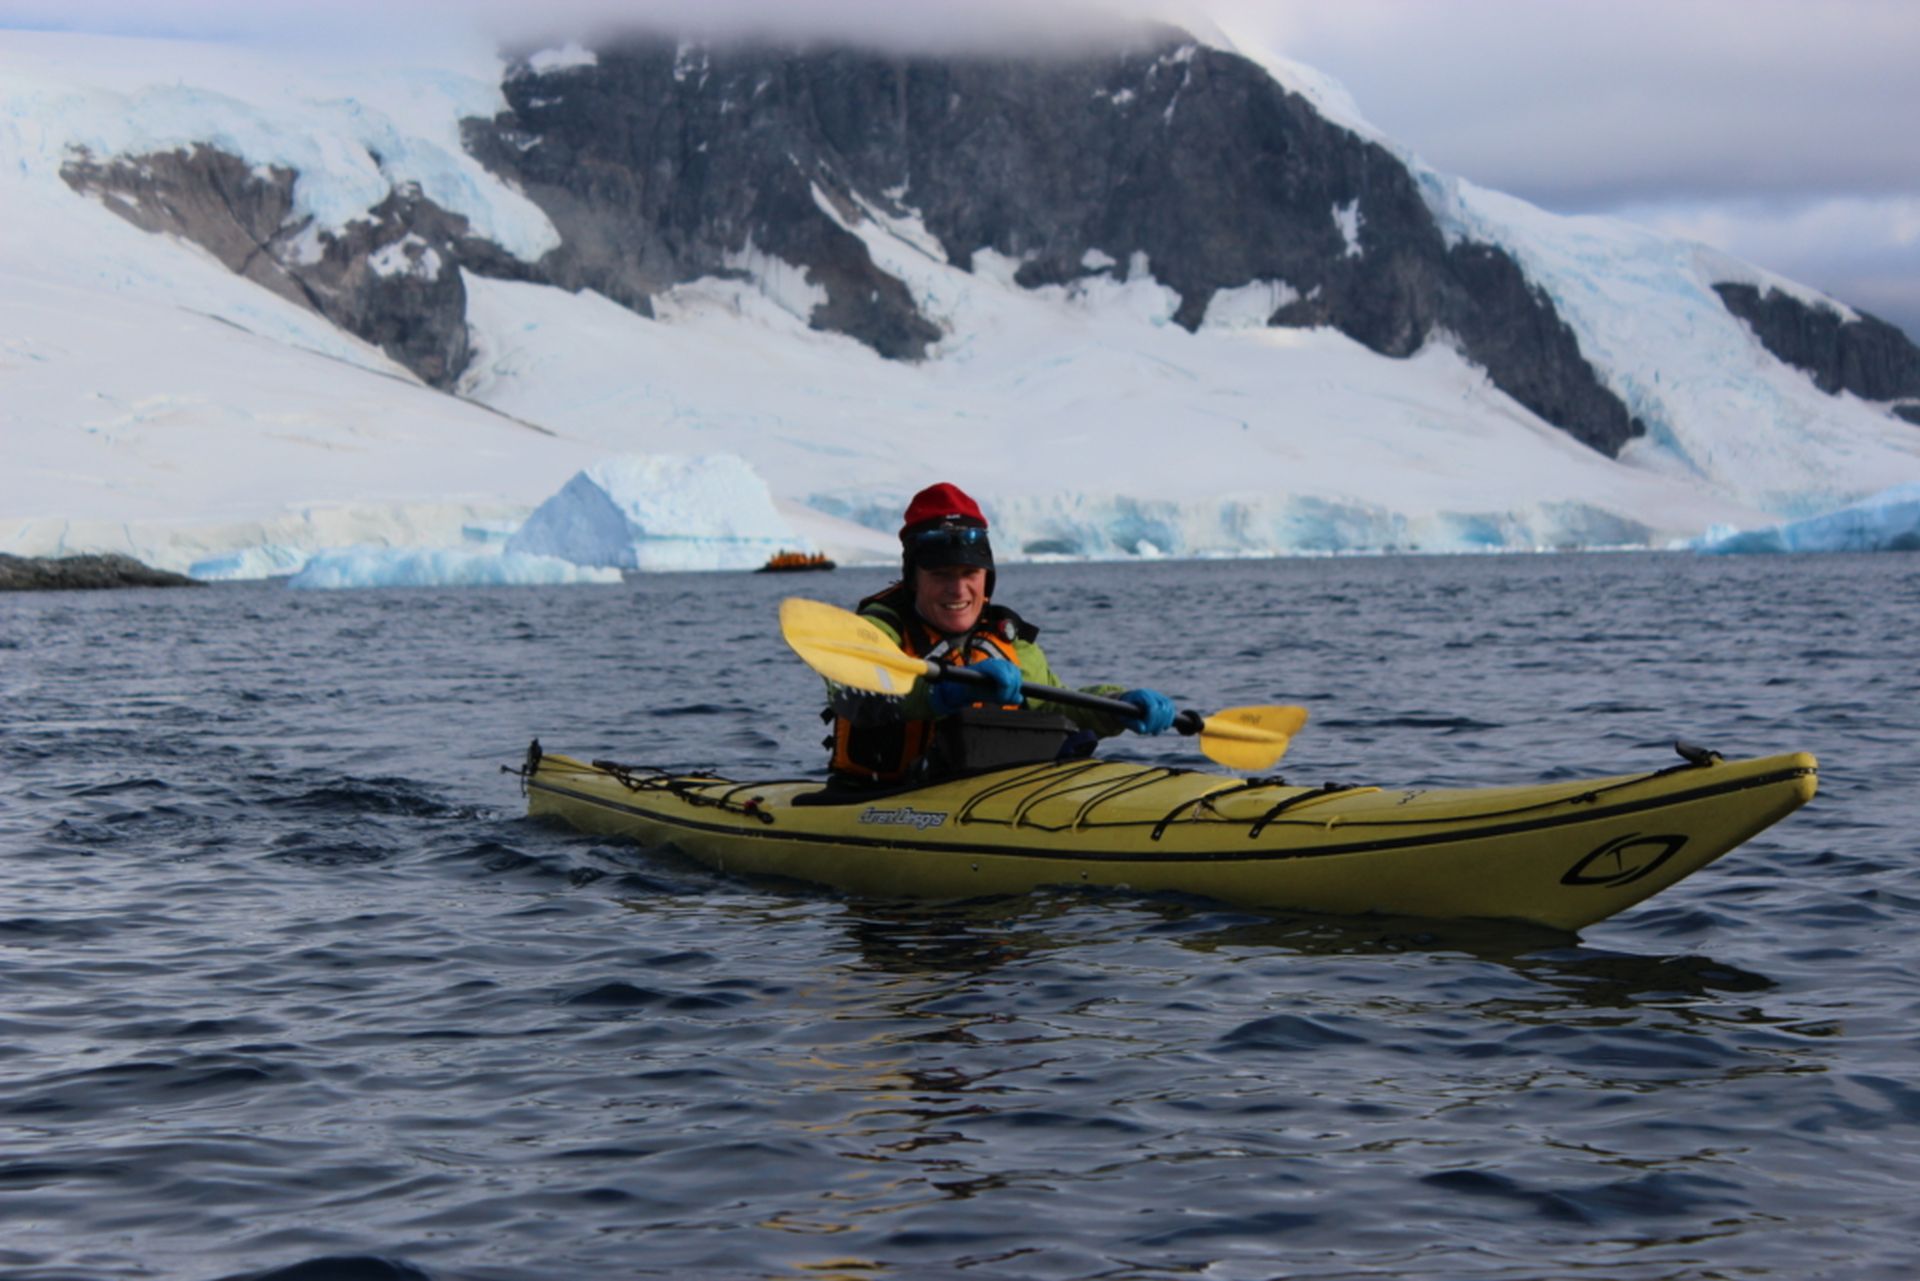 Marcus Kayaking in Antarctica